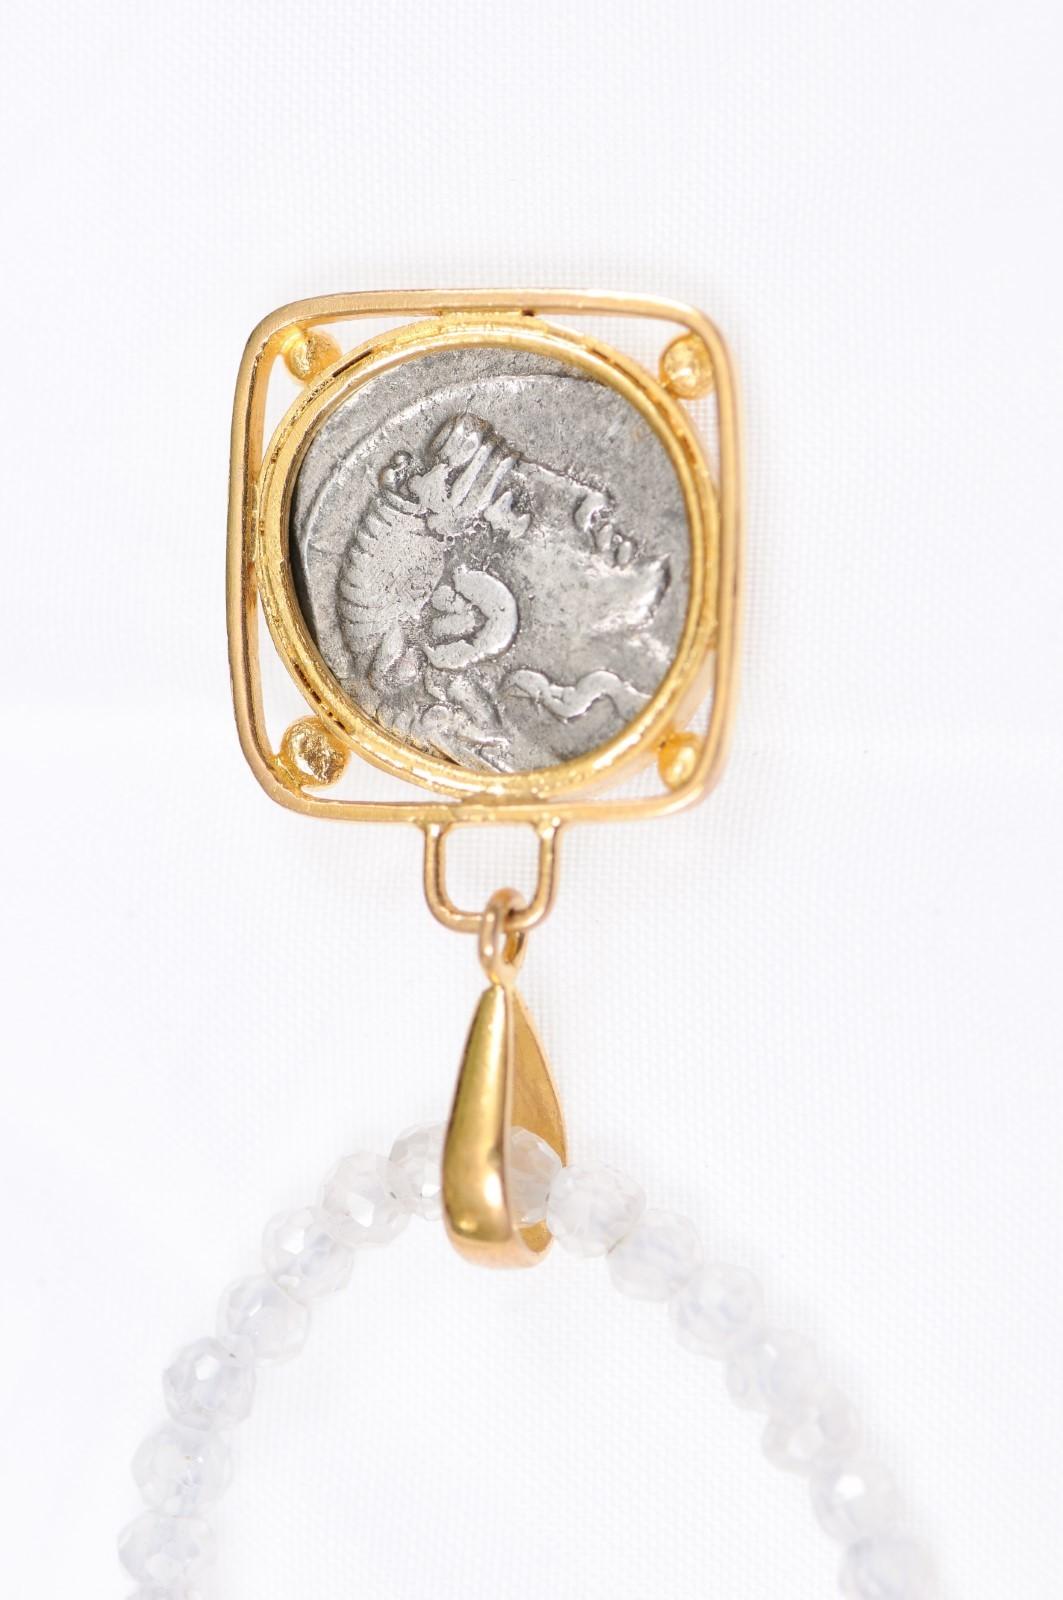 Classical Roman Ancient Roman Pegasus Coin 22k Gold Pendant (pendant only) For Sale